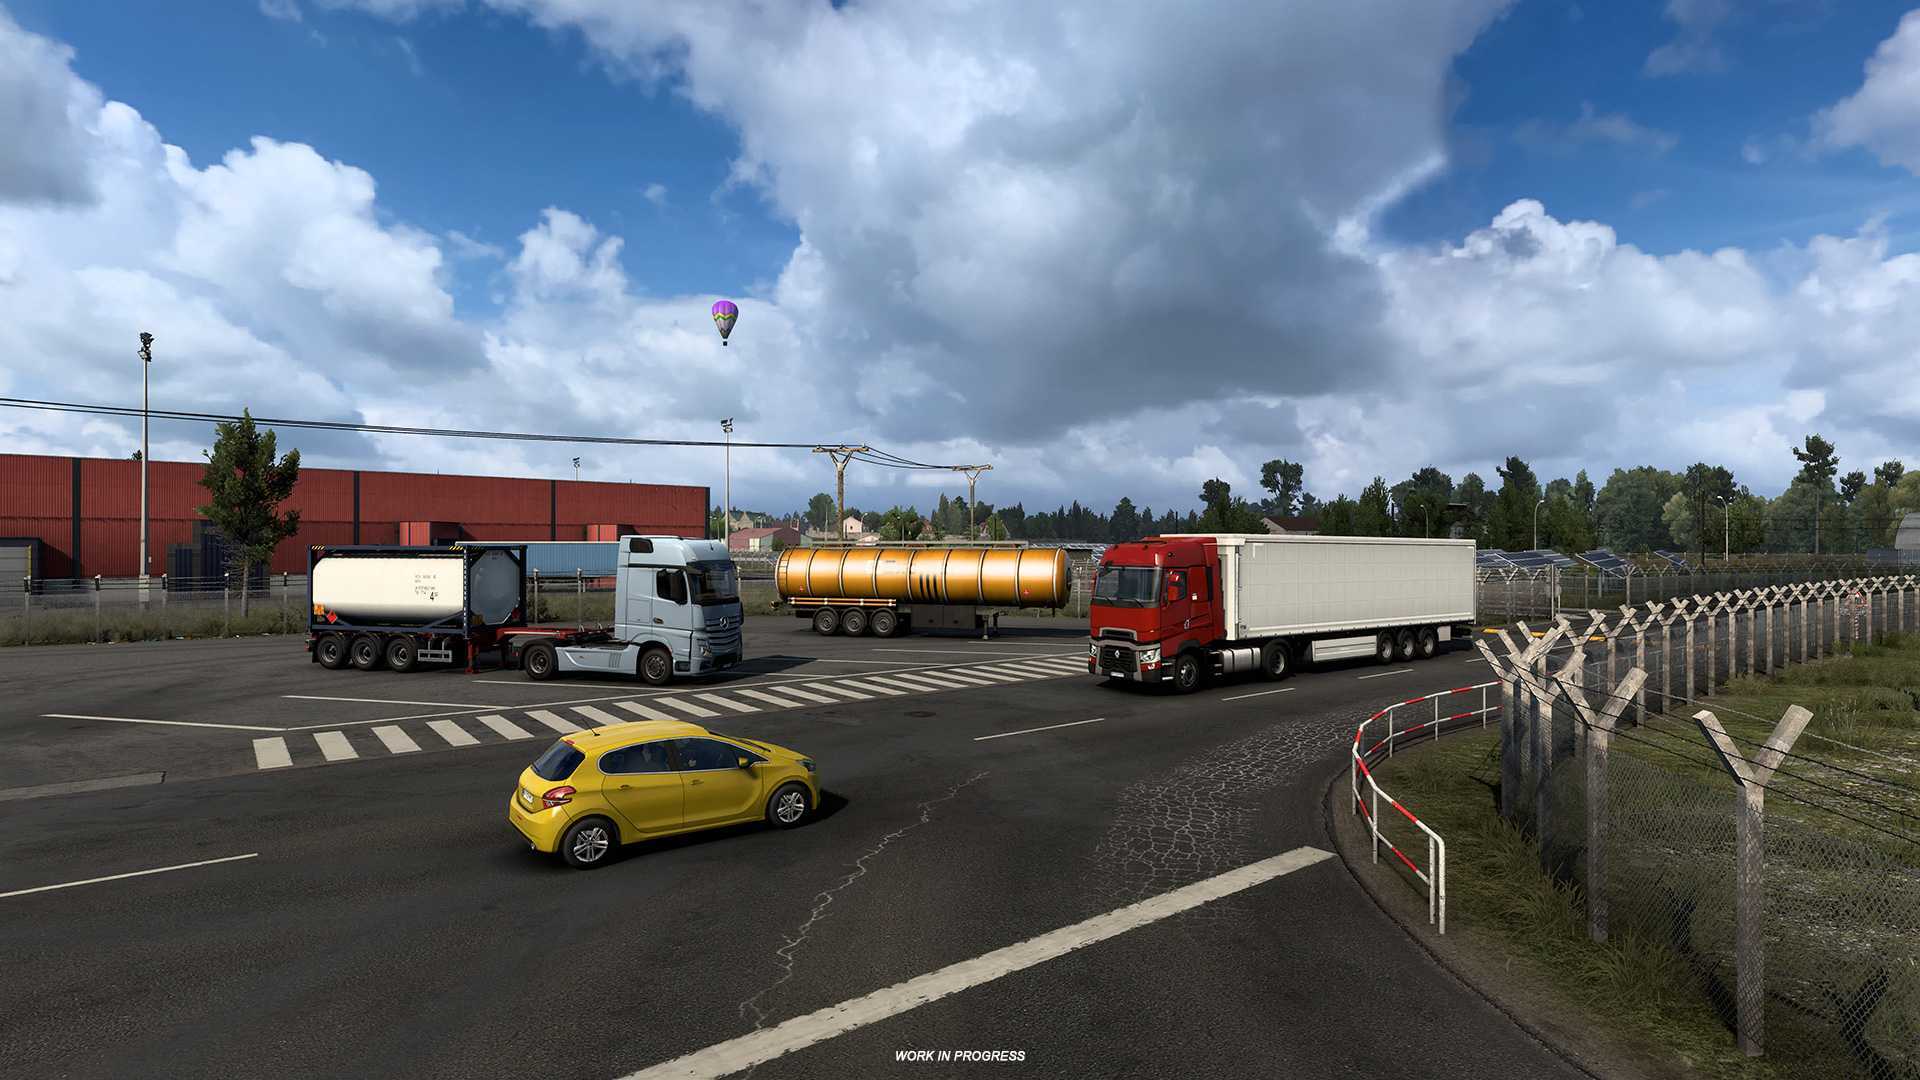 Euro truck simulator 2 - euro truck simulator 2 - wikipedia